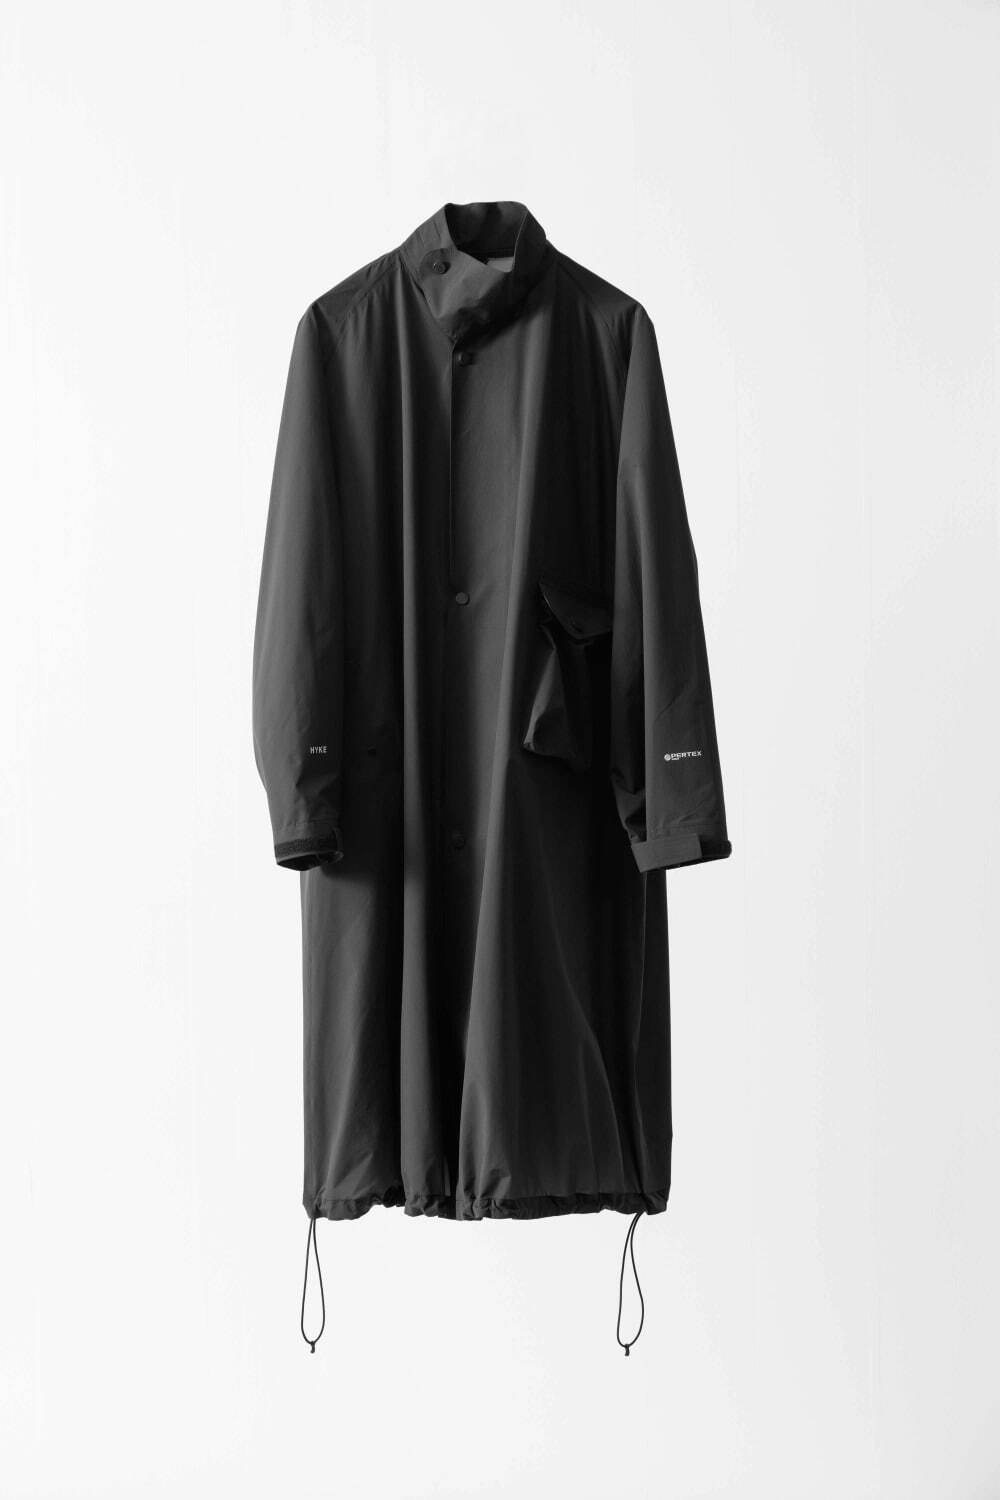 ハイク“小さく畳める”オールブラックのユニセックスコート、ビオトープ